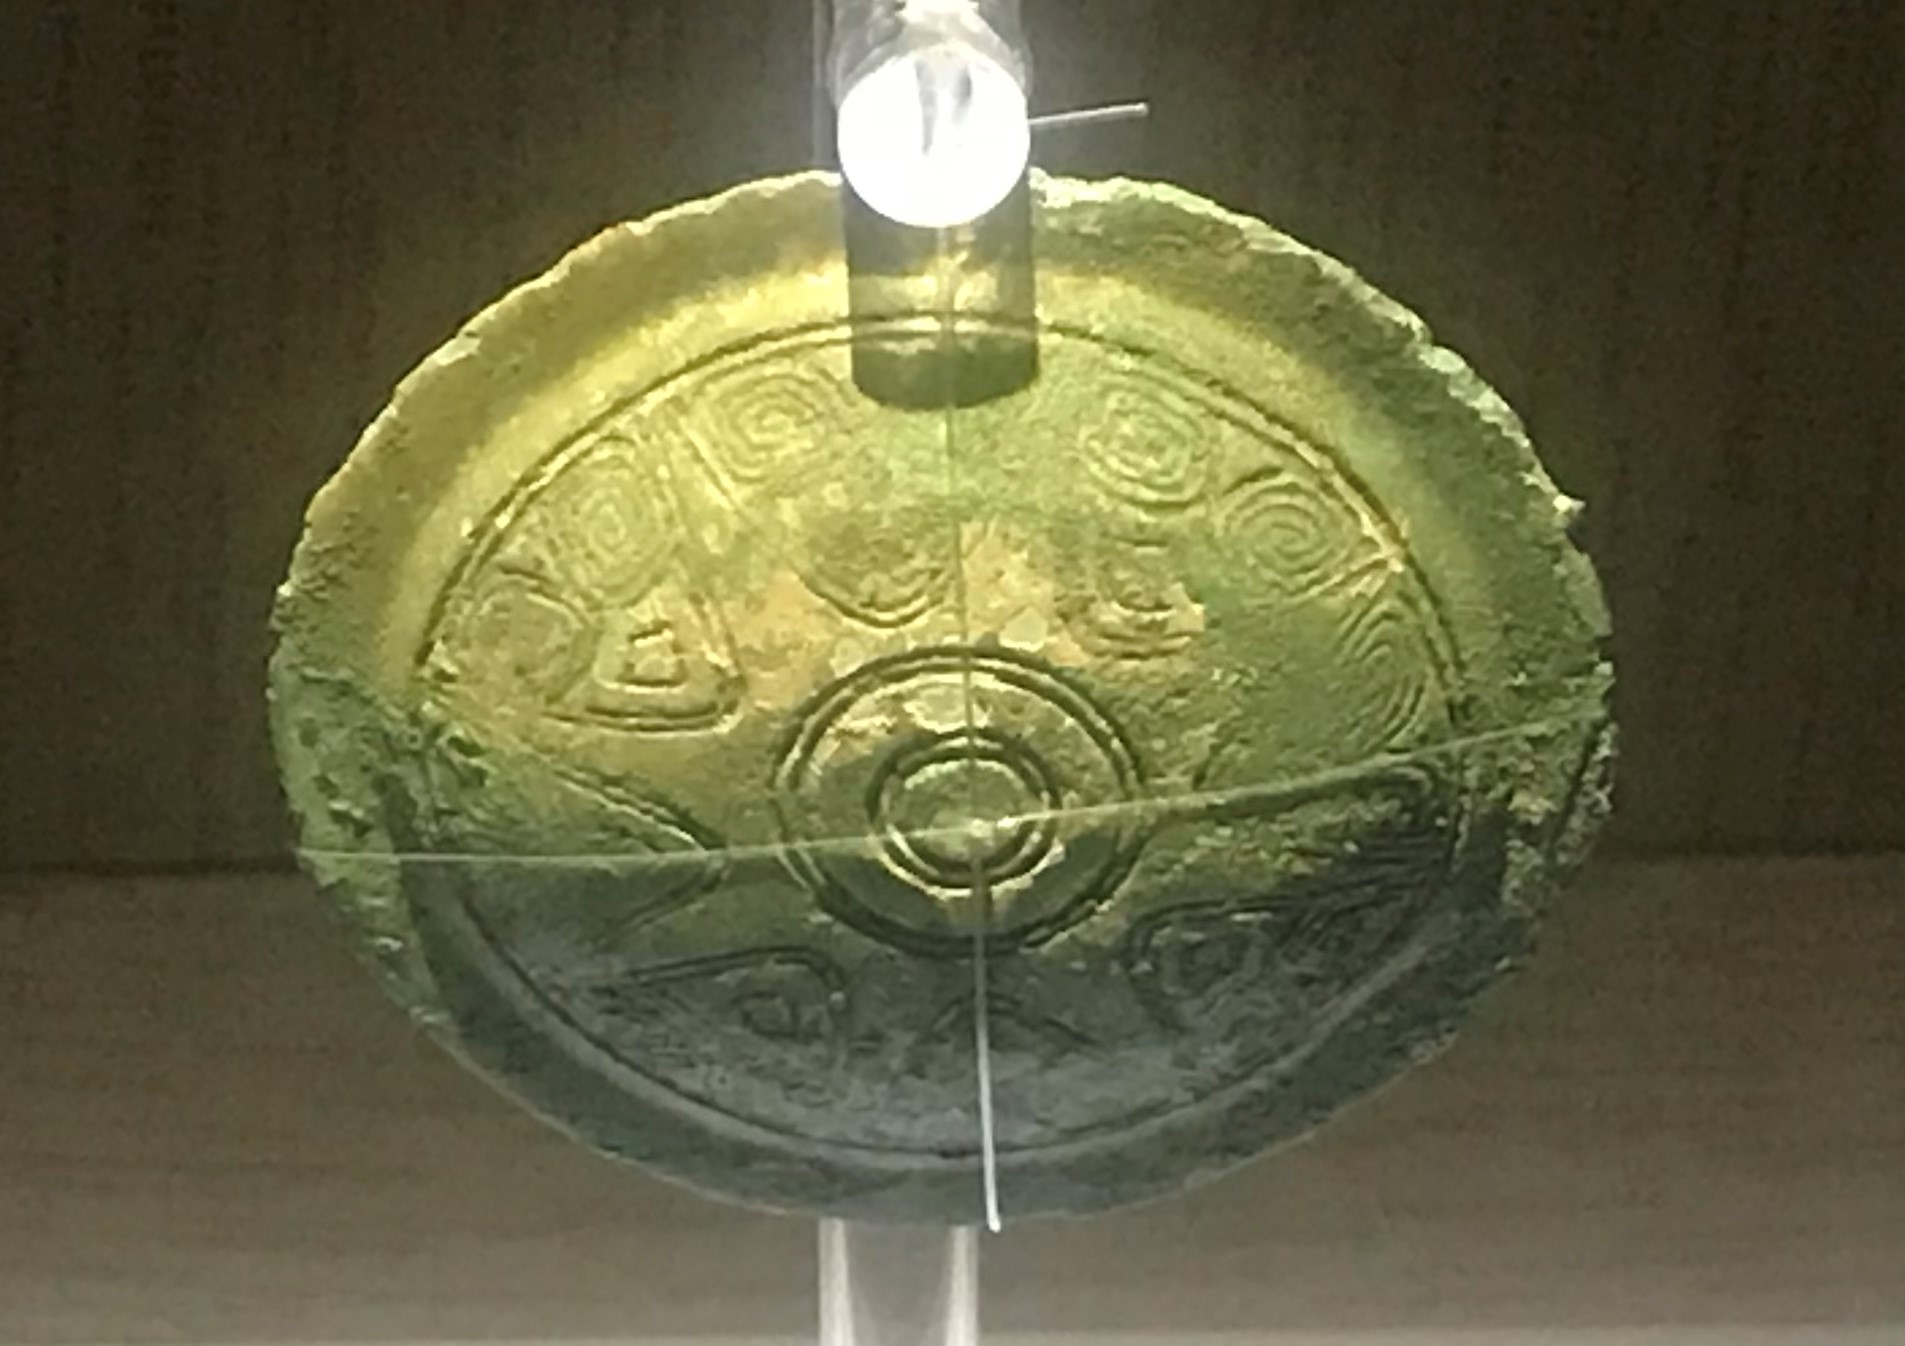 青銅円形掛け飾り-青銅器館-三星堆博物館-広漢市-徳陽市-四川省